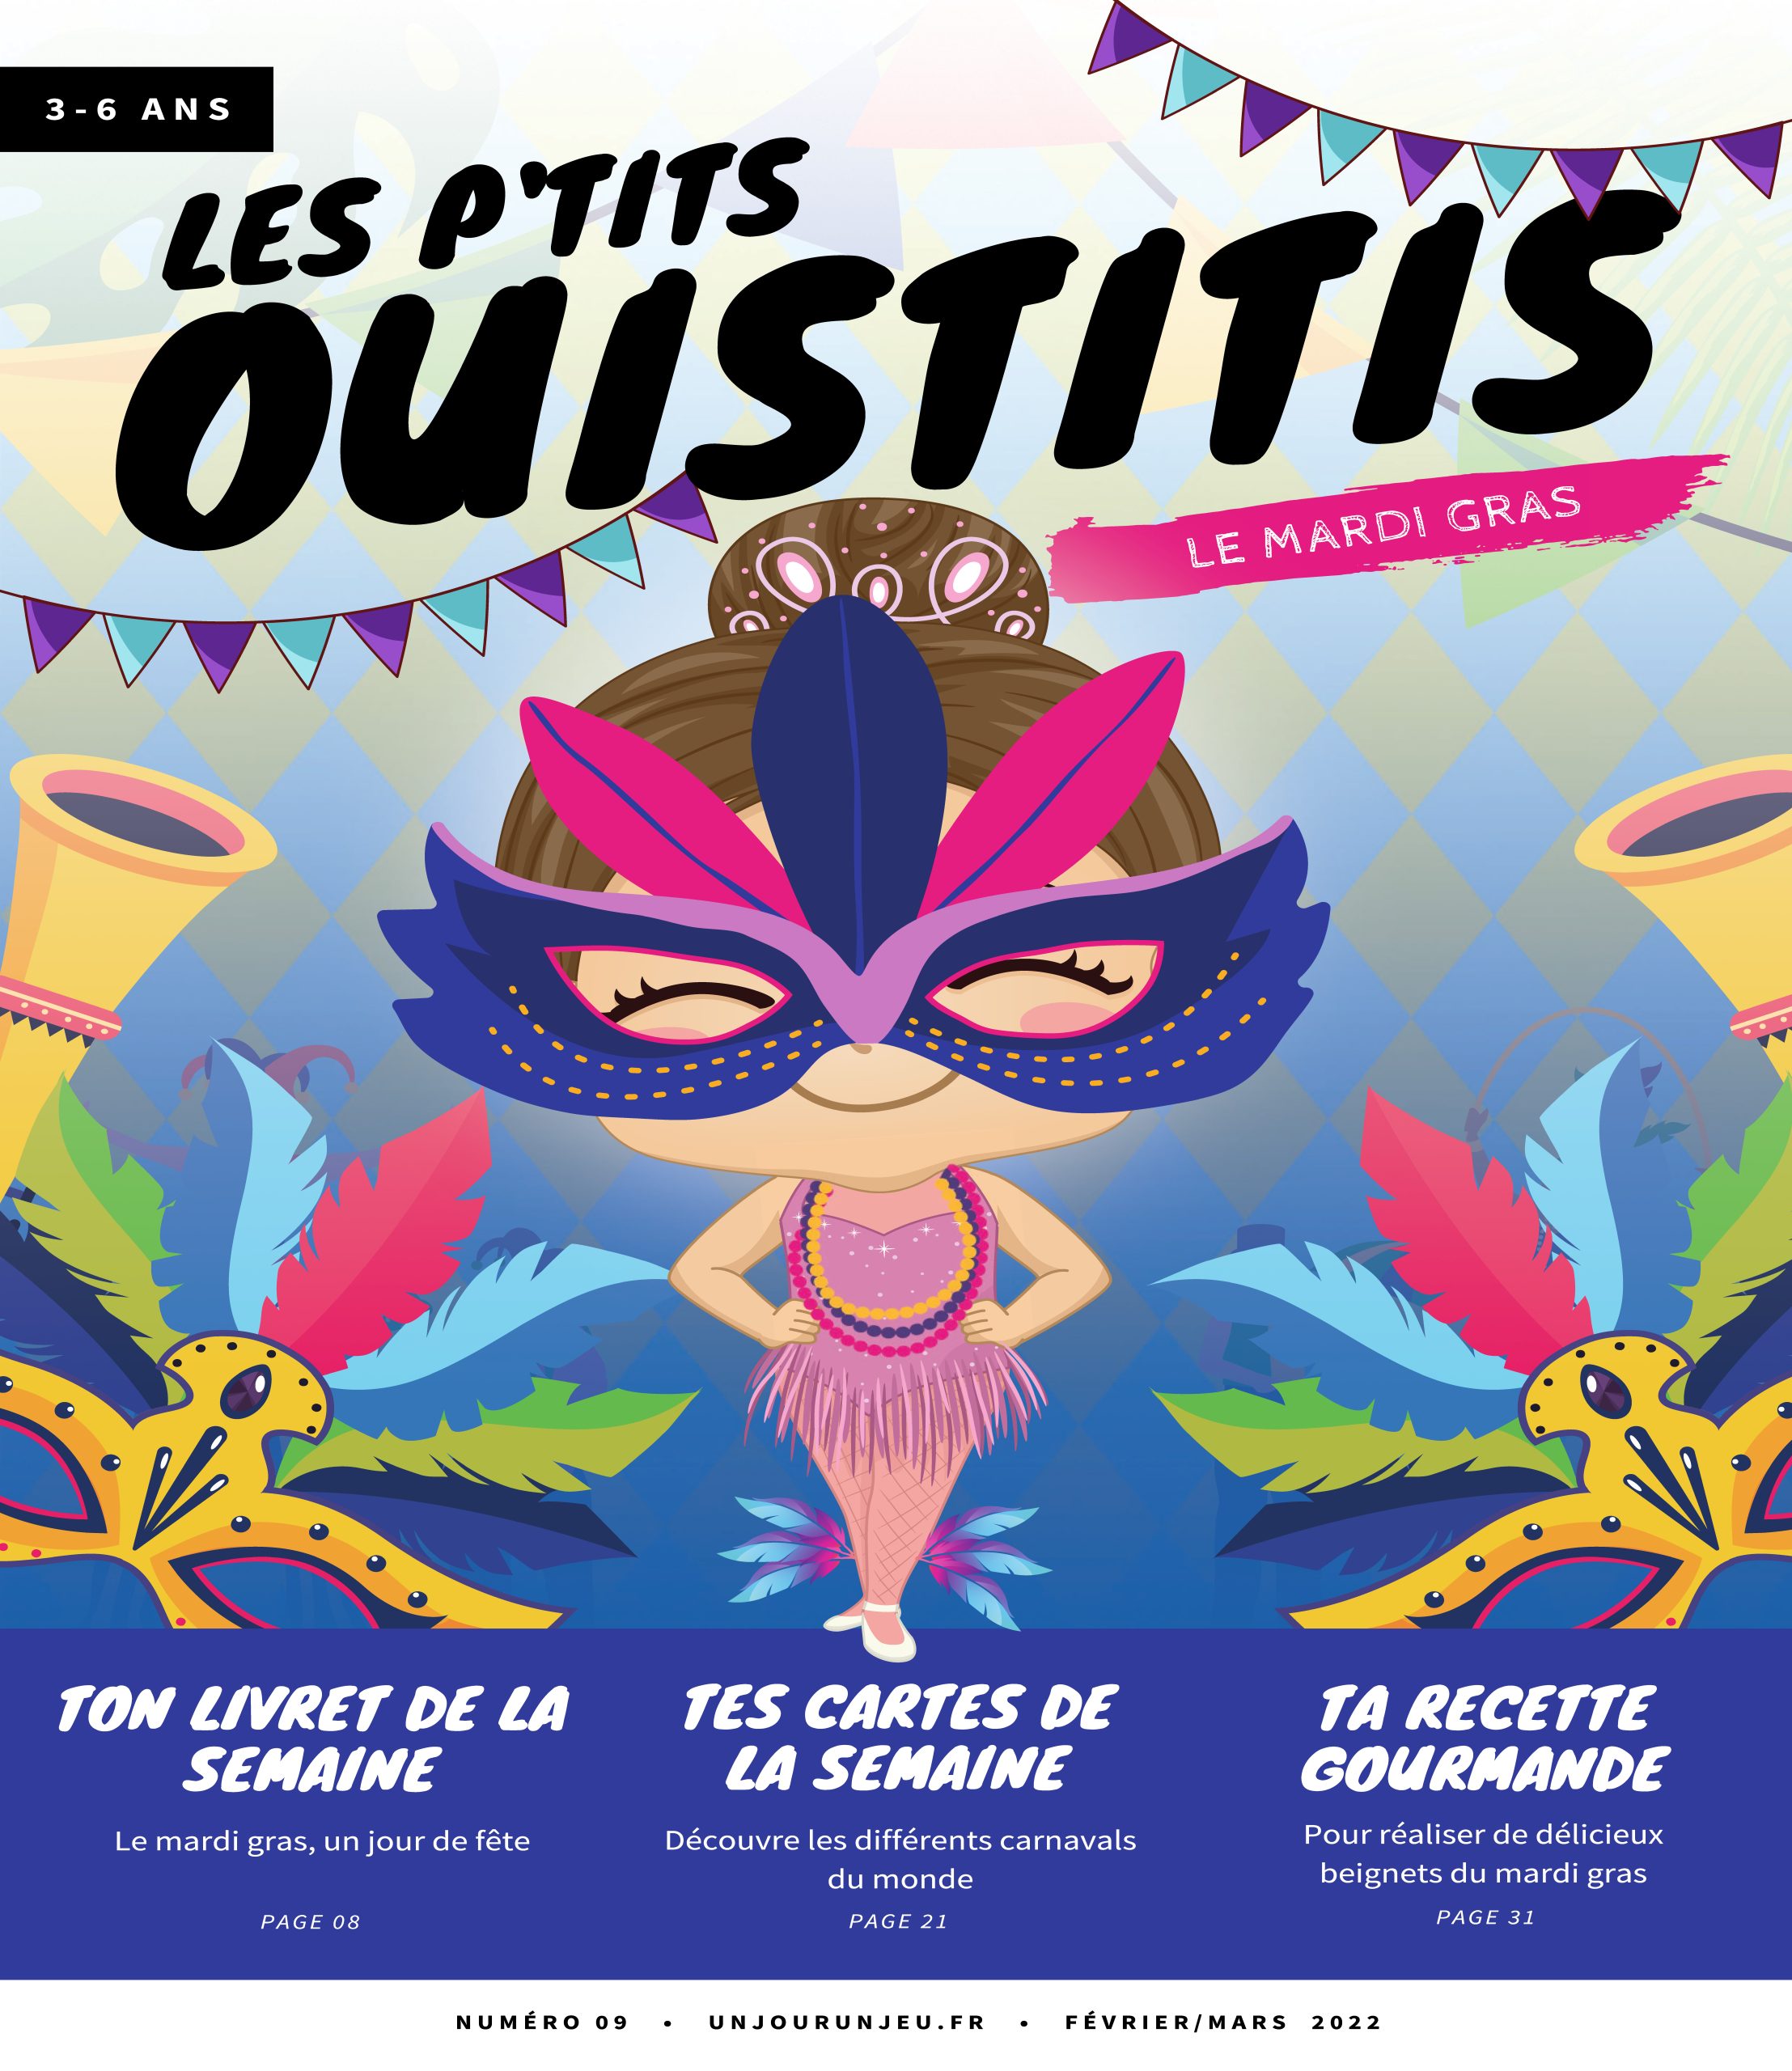 Les P'tits Ouistitis fêtent Mardi gras